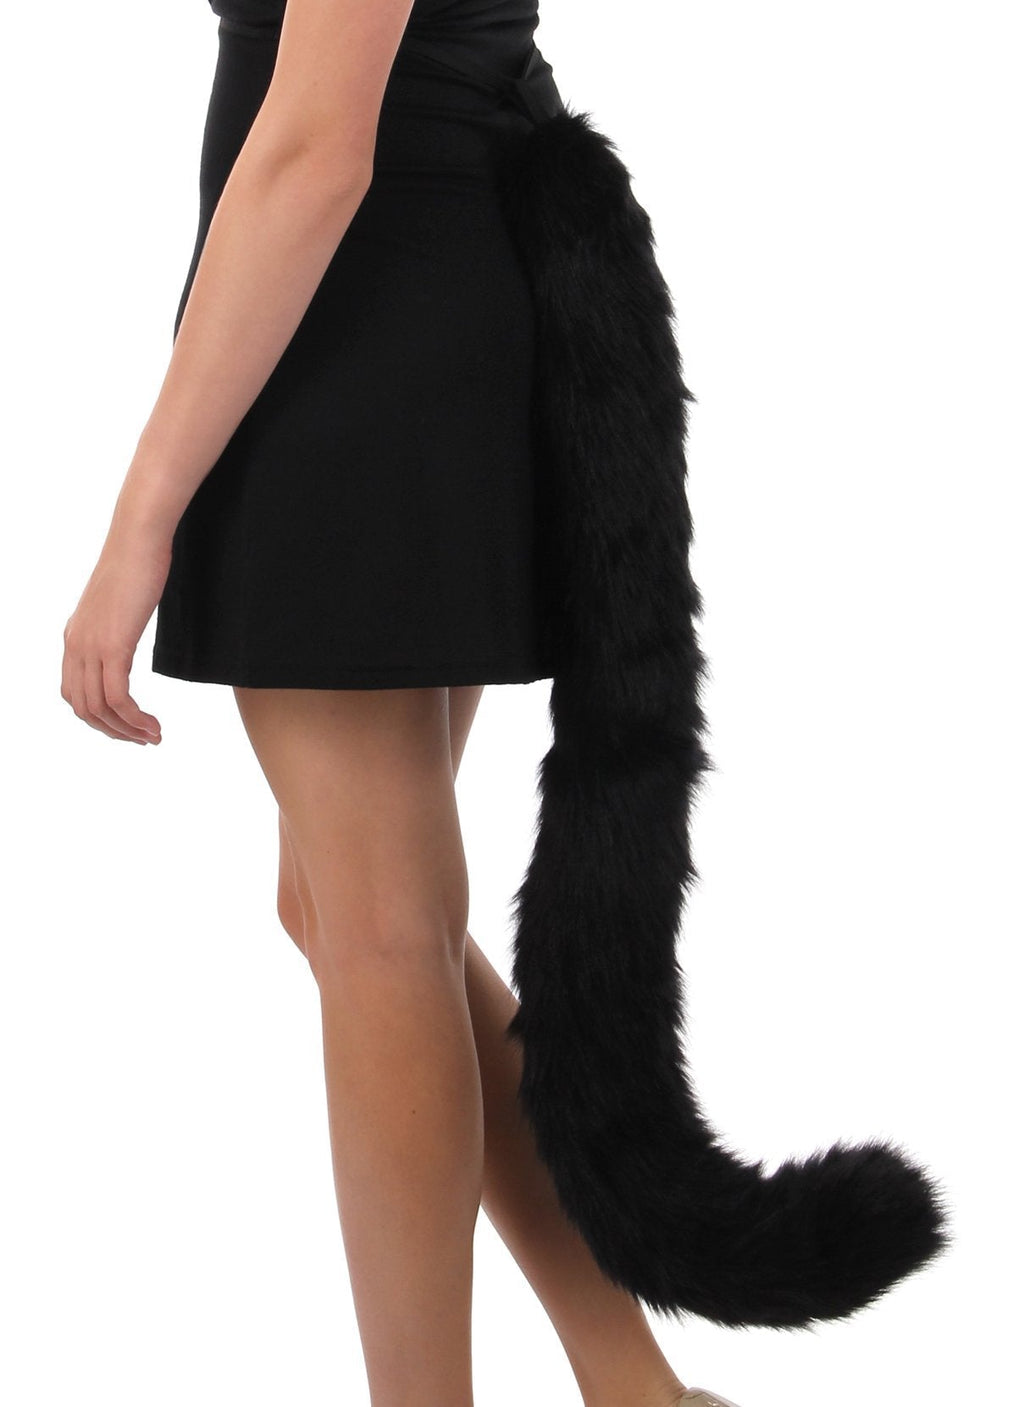 [Australia] - Deluxe Oversized Kitty Tail Standard 